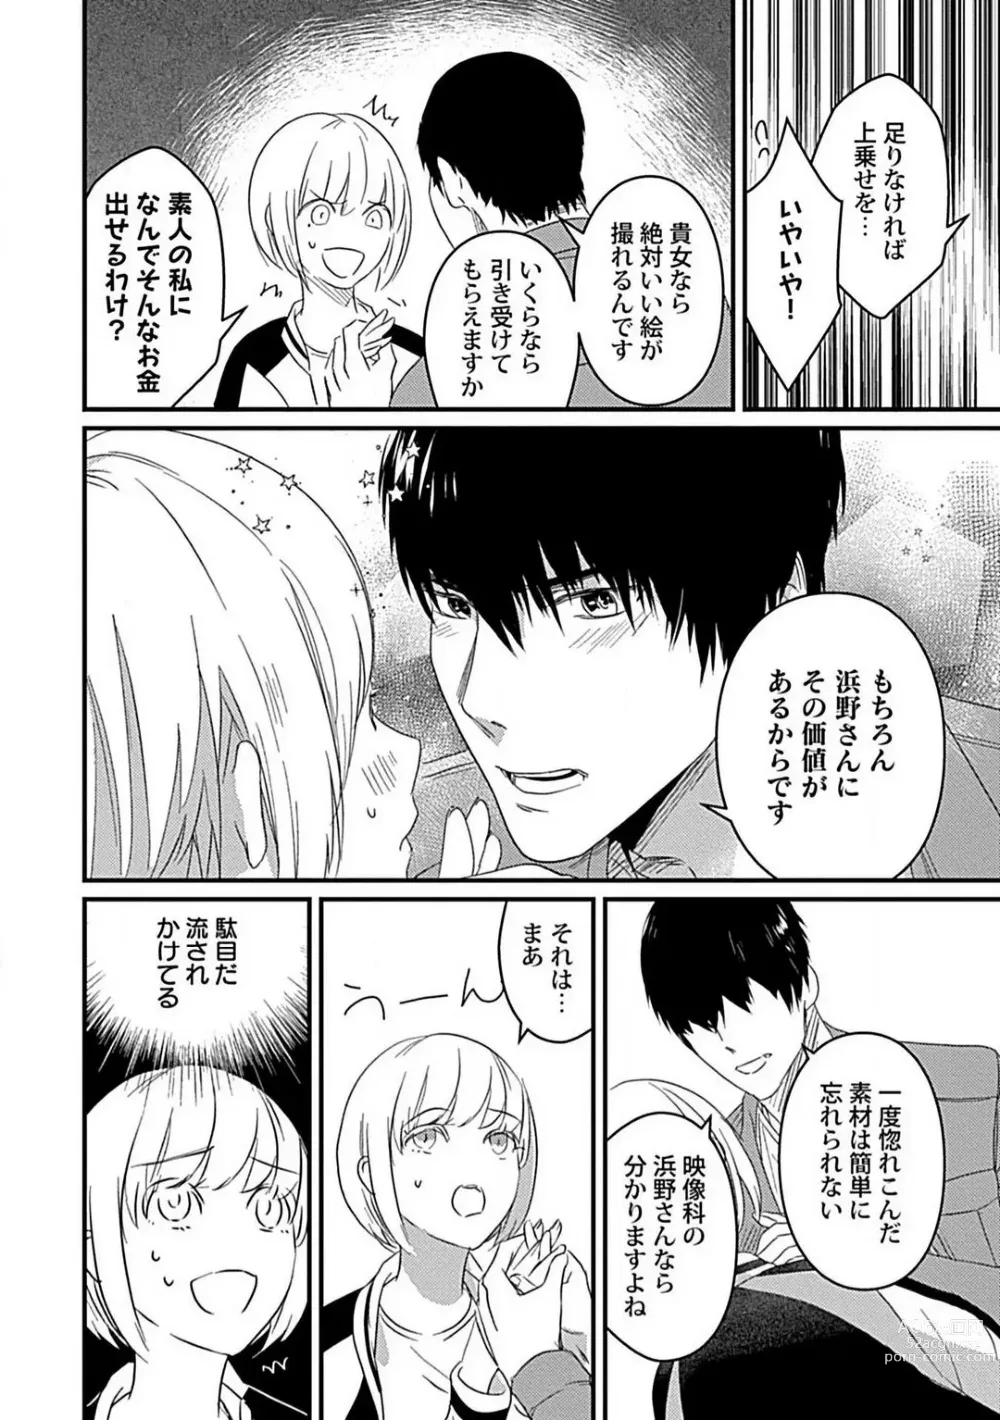 Page 7 of manga Kimi no Shisen ni Nugasa Rete